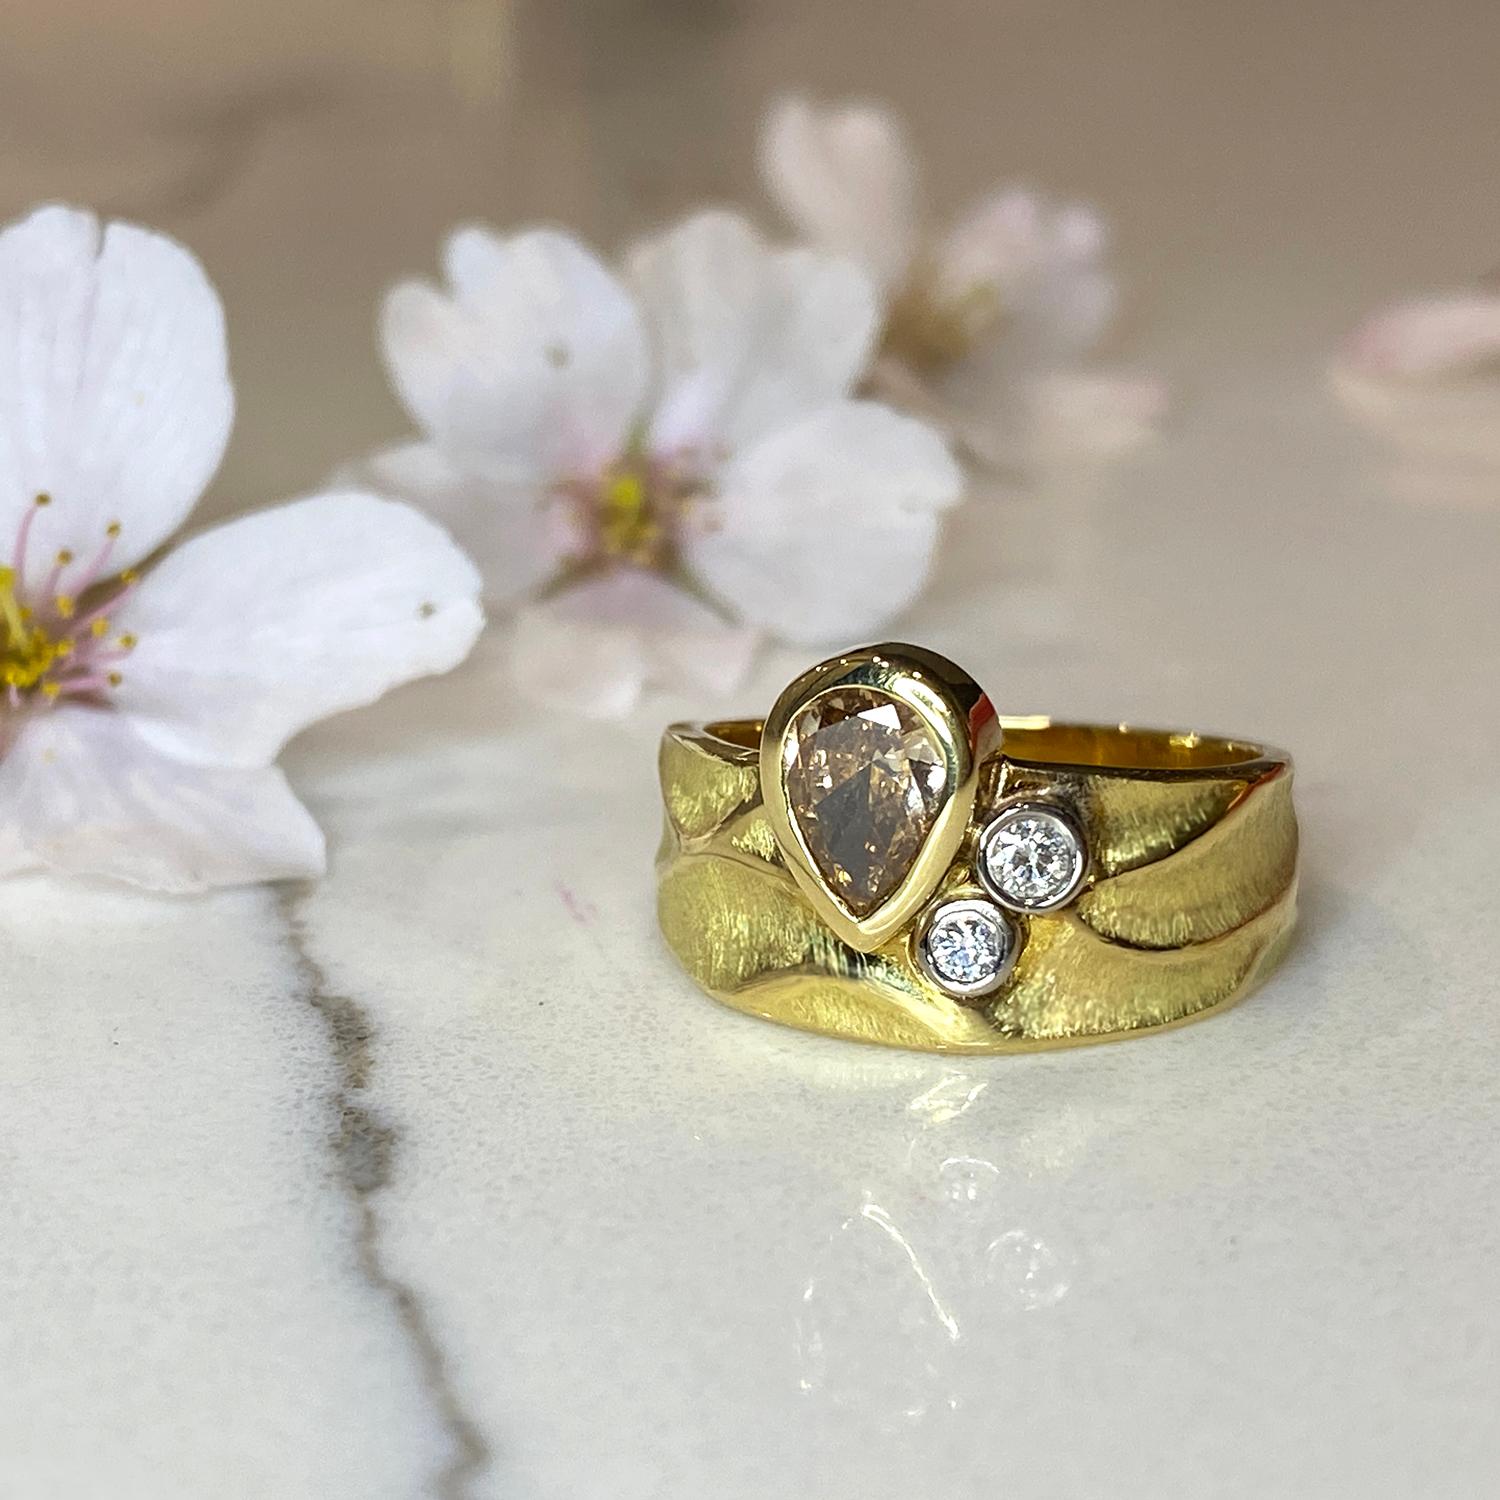 Der einzigartige Rebecca Ring aus 18 Karat Gelbgold von K.K. besitzt einen braunen Diamanten von 0,46 Karat, der von zwei weißen Diamanten (0,07 Karat Gesamtgewicht) akzentuiert wird, die in 18 Karat Palladium-Weißgold gefasst sind. Der